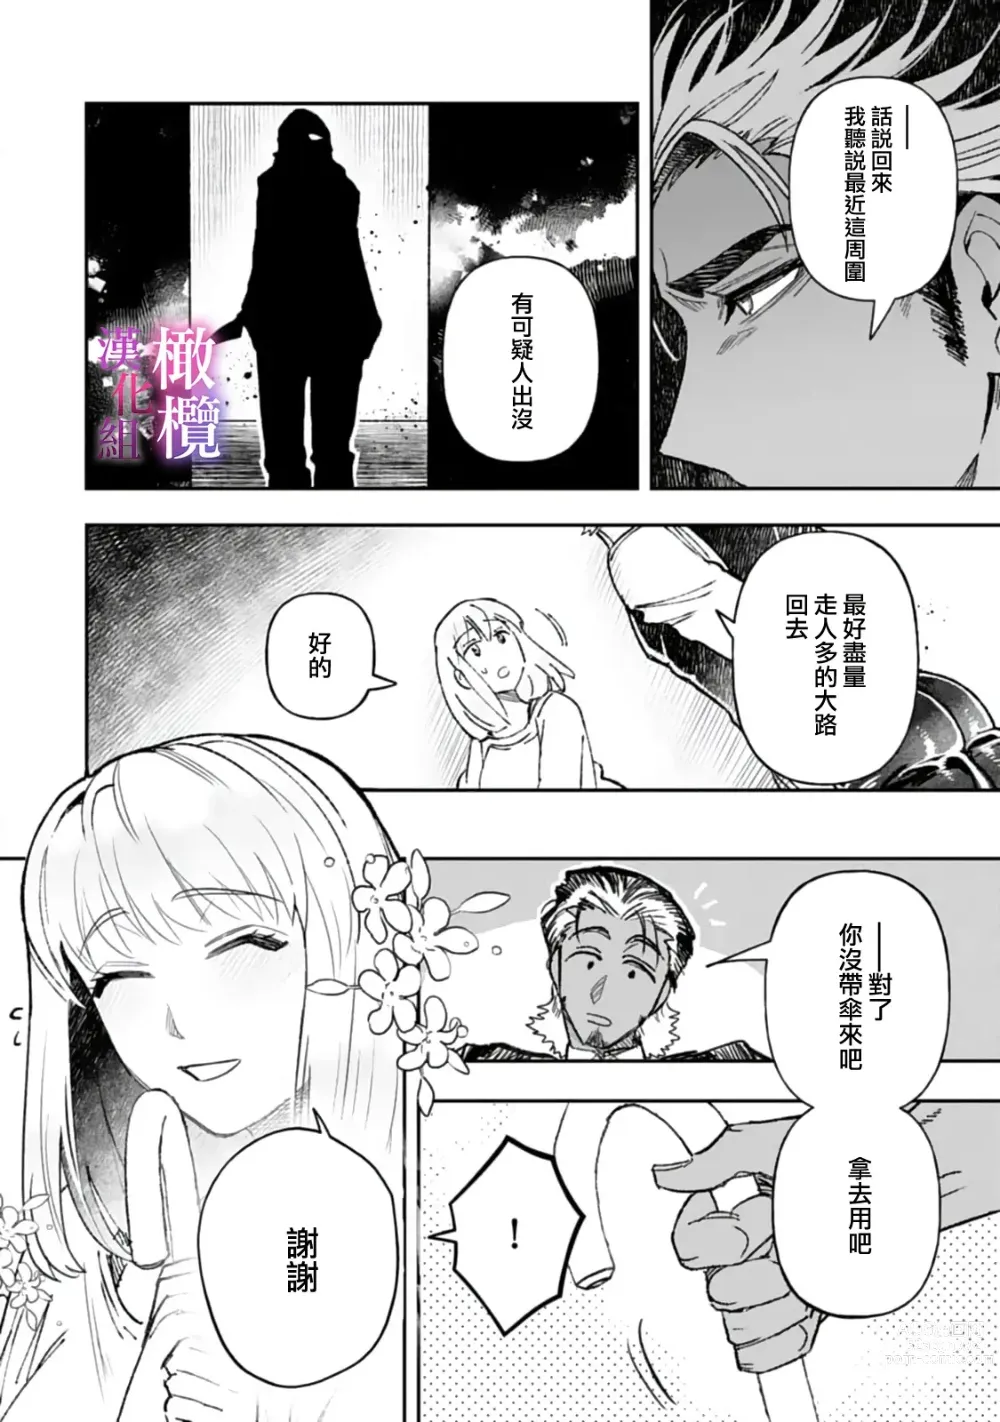 Page 12 of manga 本能性欲 温柔年上狼沉醉于处女费洛蒙 01~03